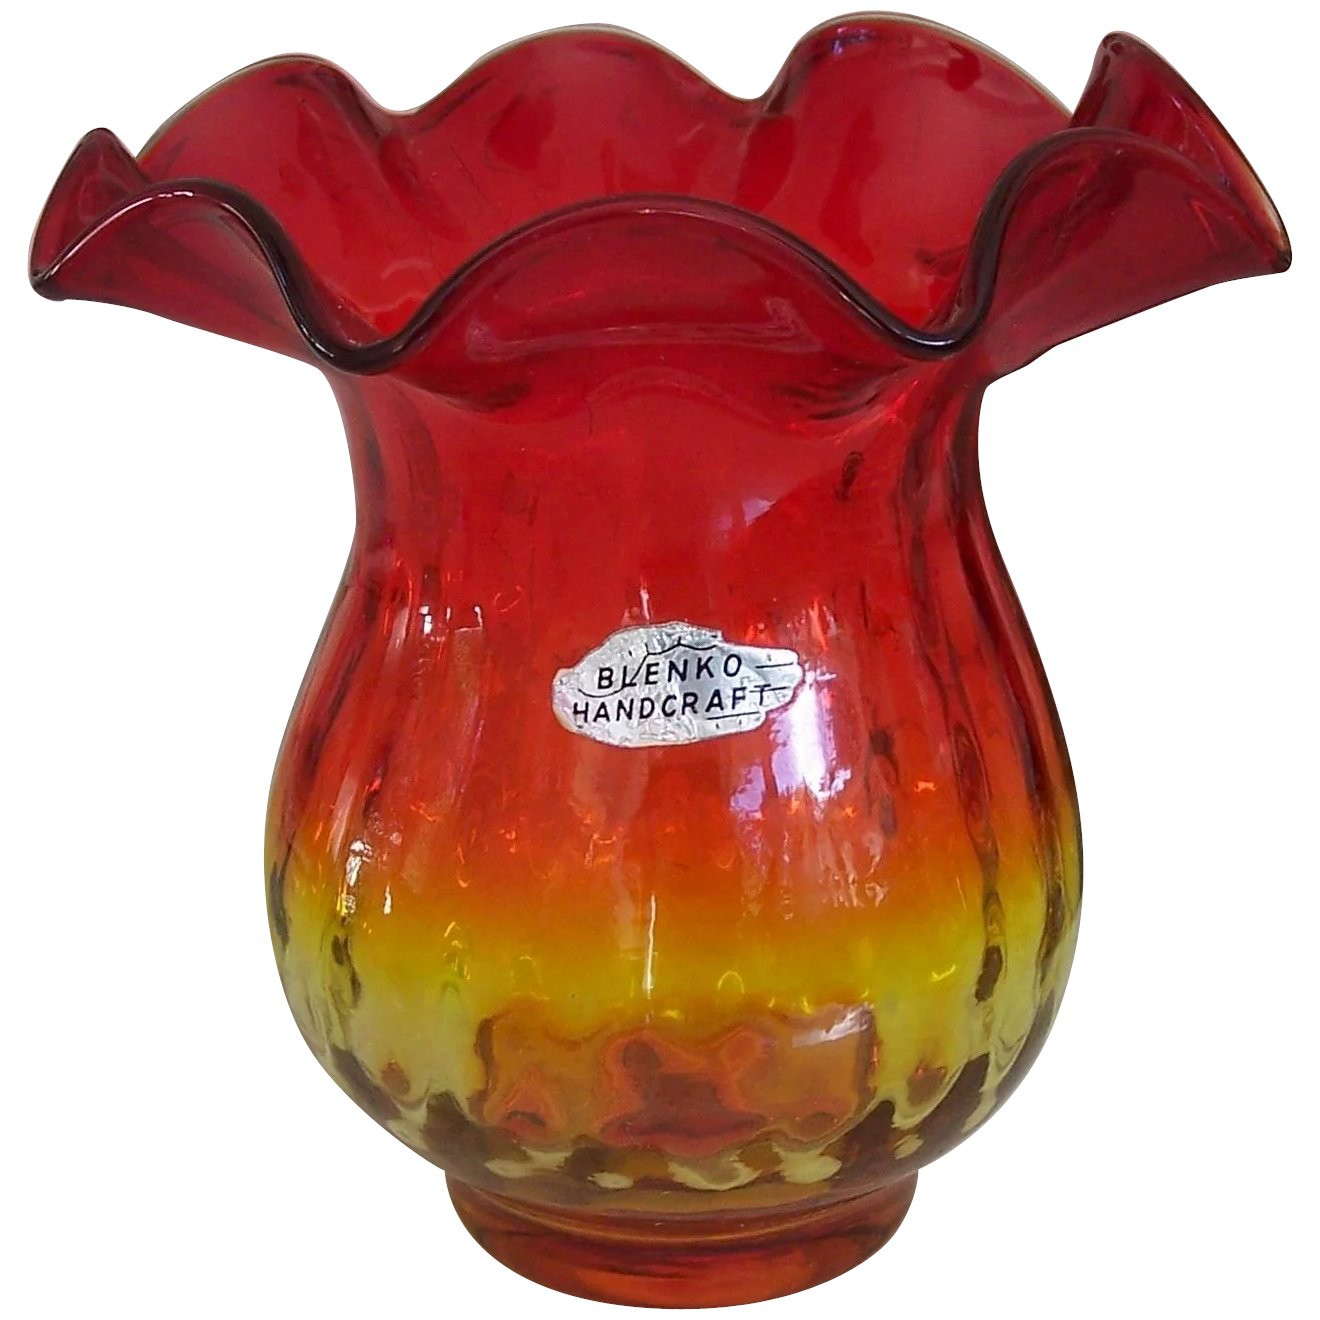 blenko handcraft vase of vintage blenko handcraft amberina glass vase ruffled top w label regarding click to expand